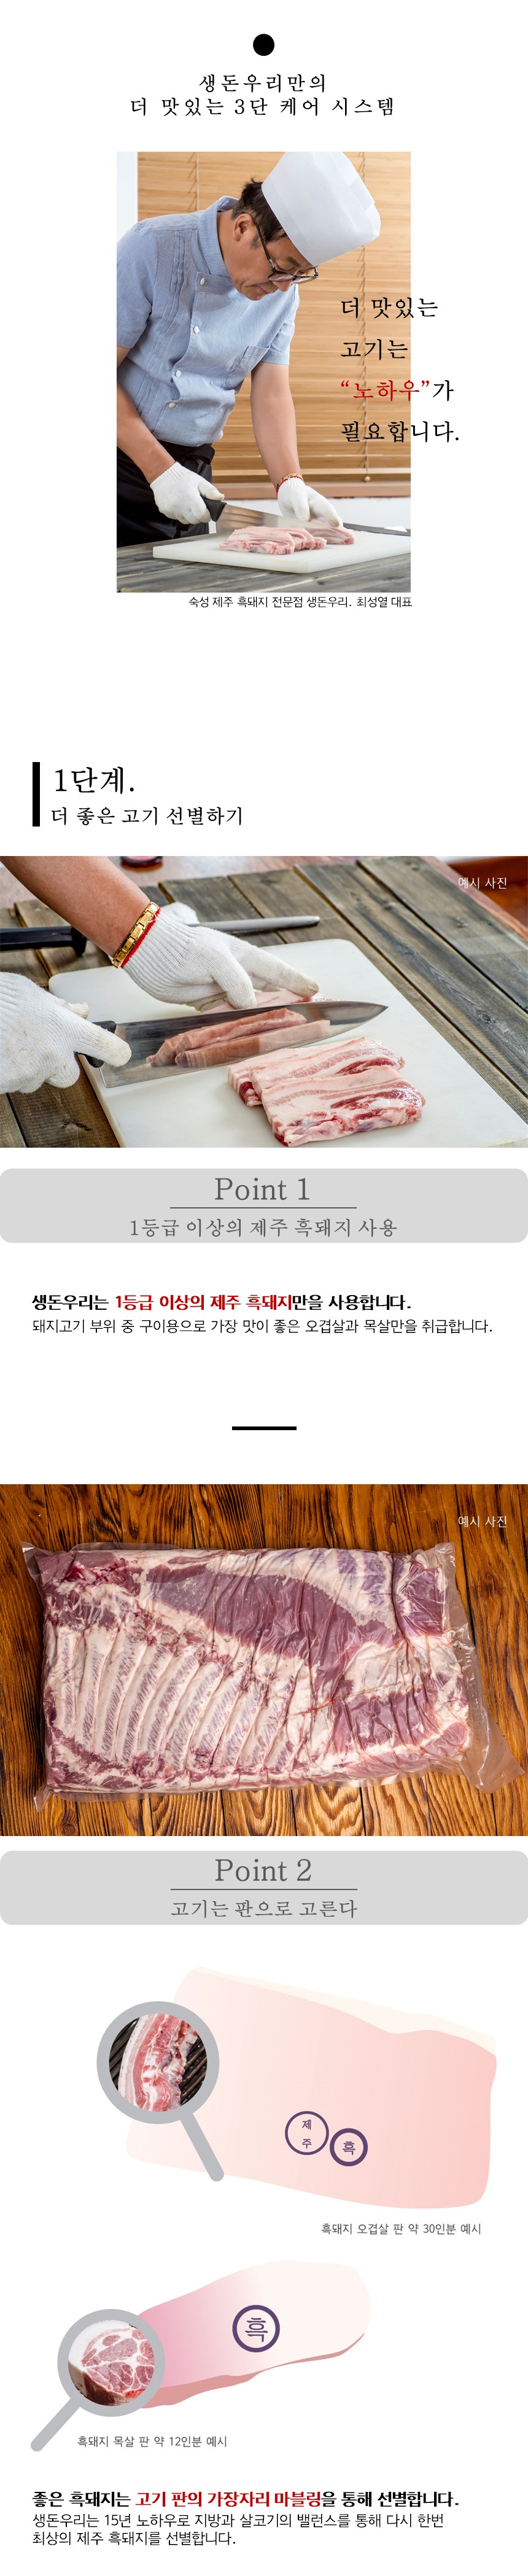 [냉장]30시간 숙성 제주 흑돼지 앞다리살 1kg 상세